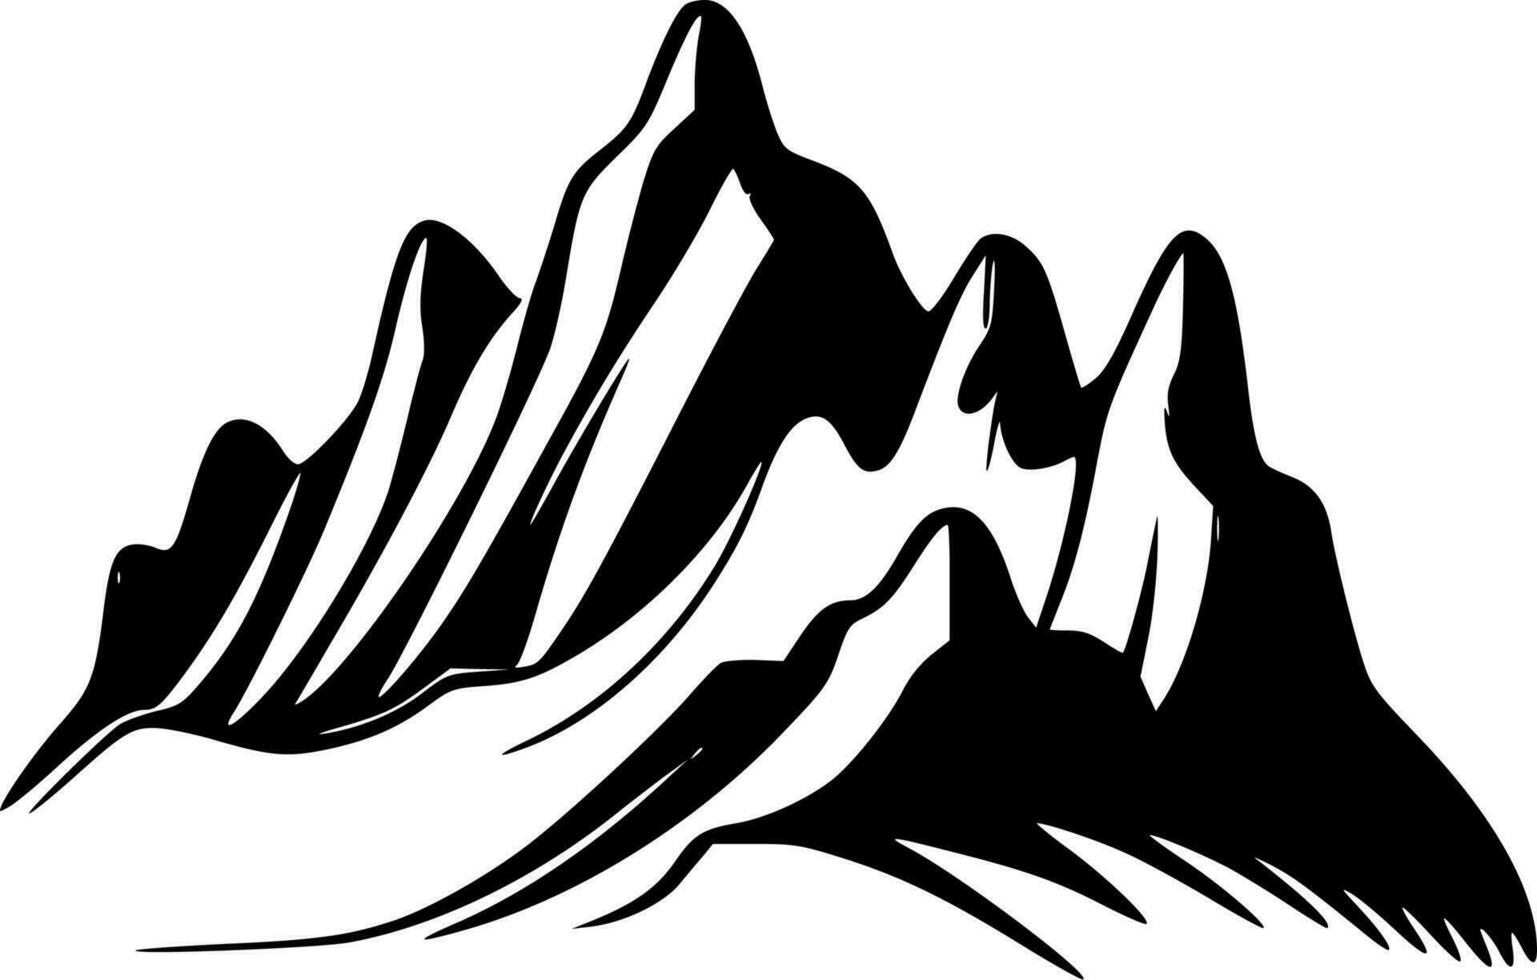 montagnes - haute qualité vecteur logo - vecteur illustration idéal pour T-shirt graphique